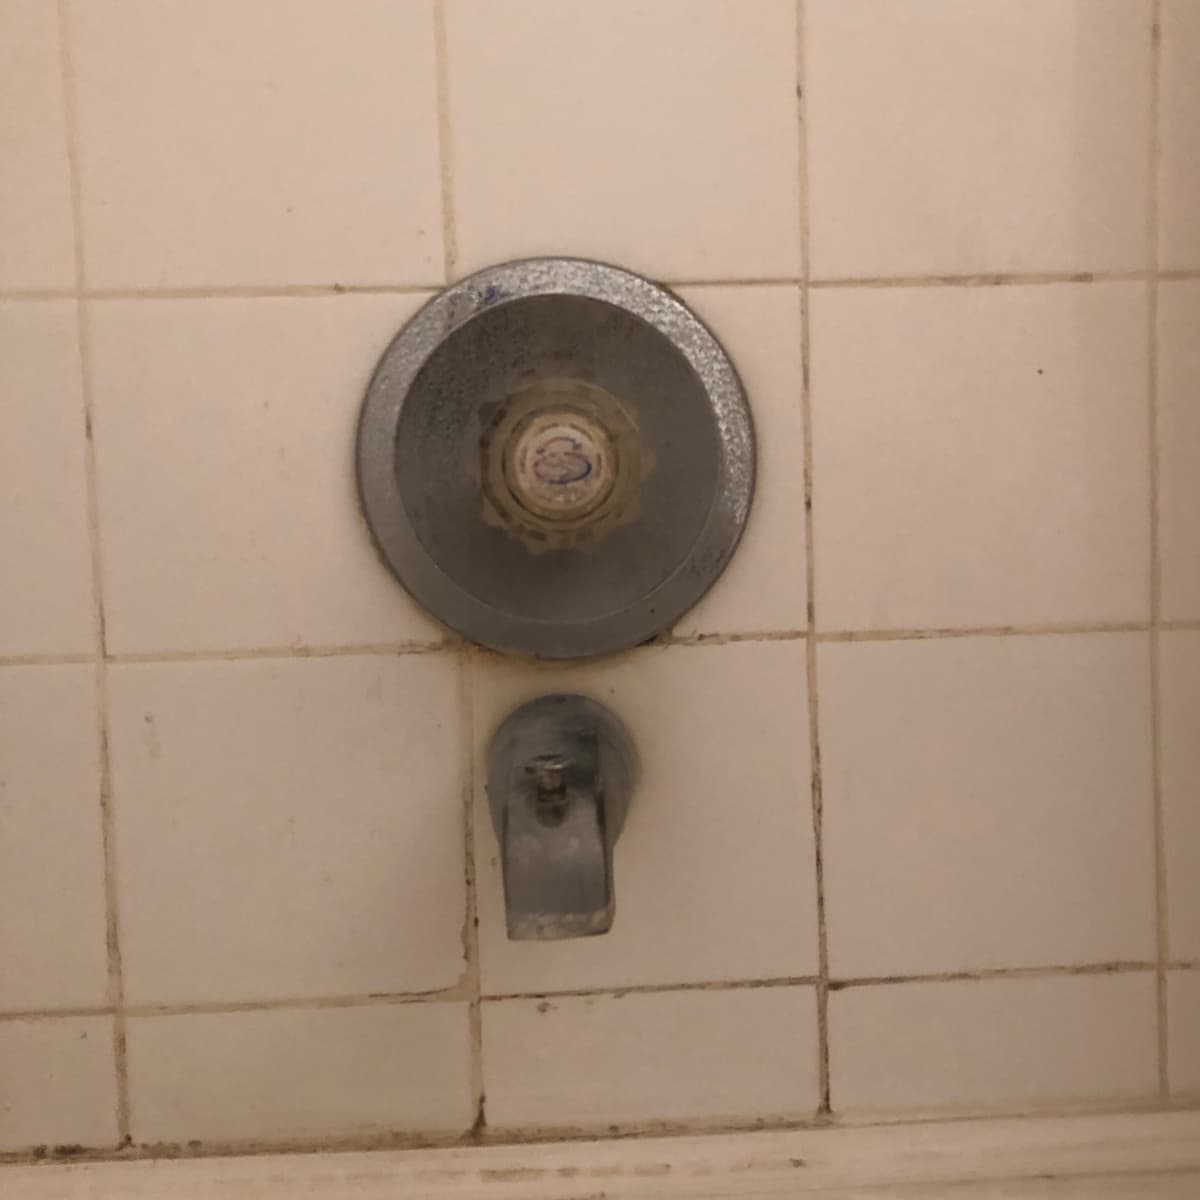 Replace A Single Handle Shower Valve, Broken Bathtub Faucet Handle